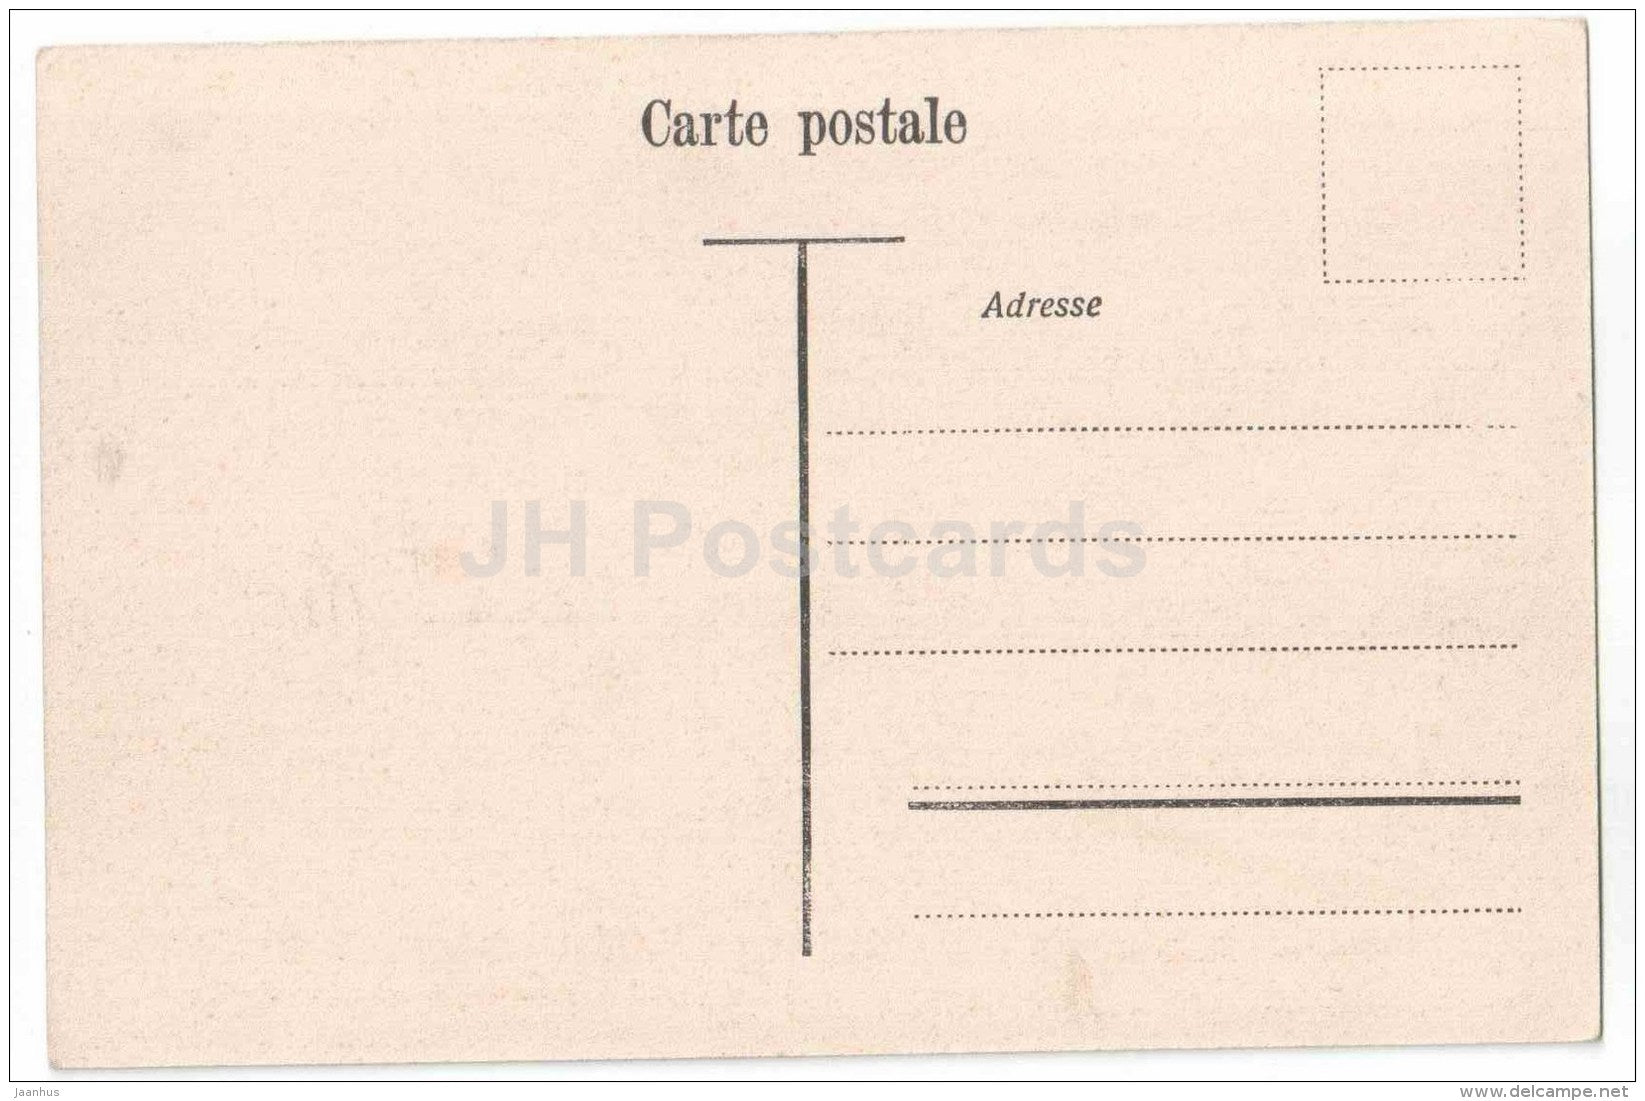 Place Bel Air et le Kursaal - Lausanne - 4140 - Switzerland - old postcard - unused - JH Postcards